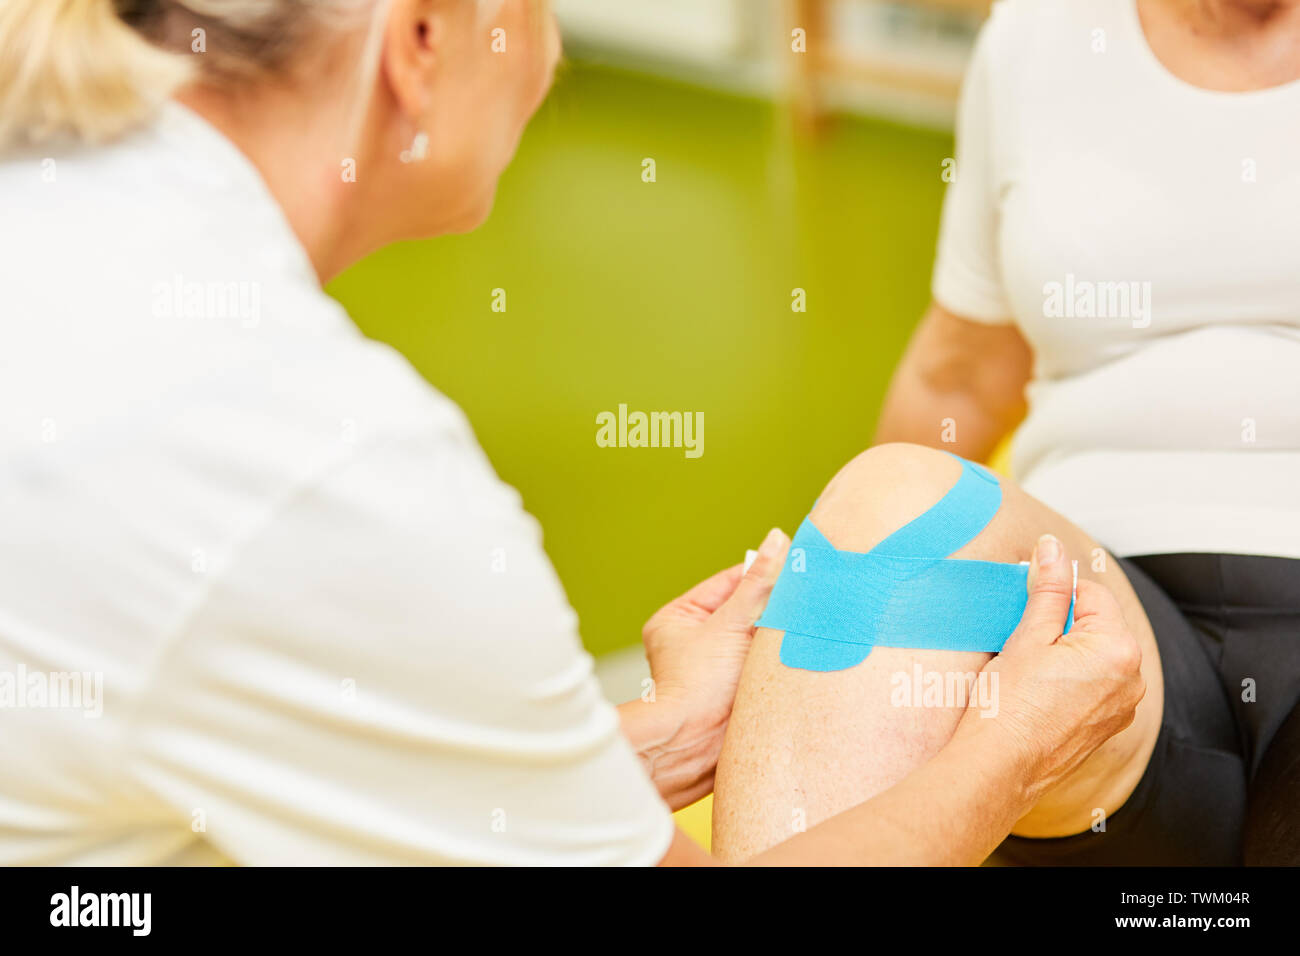 Physiothérapeute attache un ruban kinesio au genou d'un patient pour le soulagement de douleur Banque D'Images